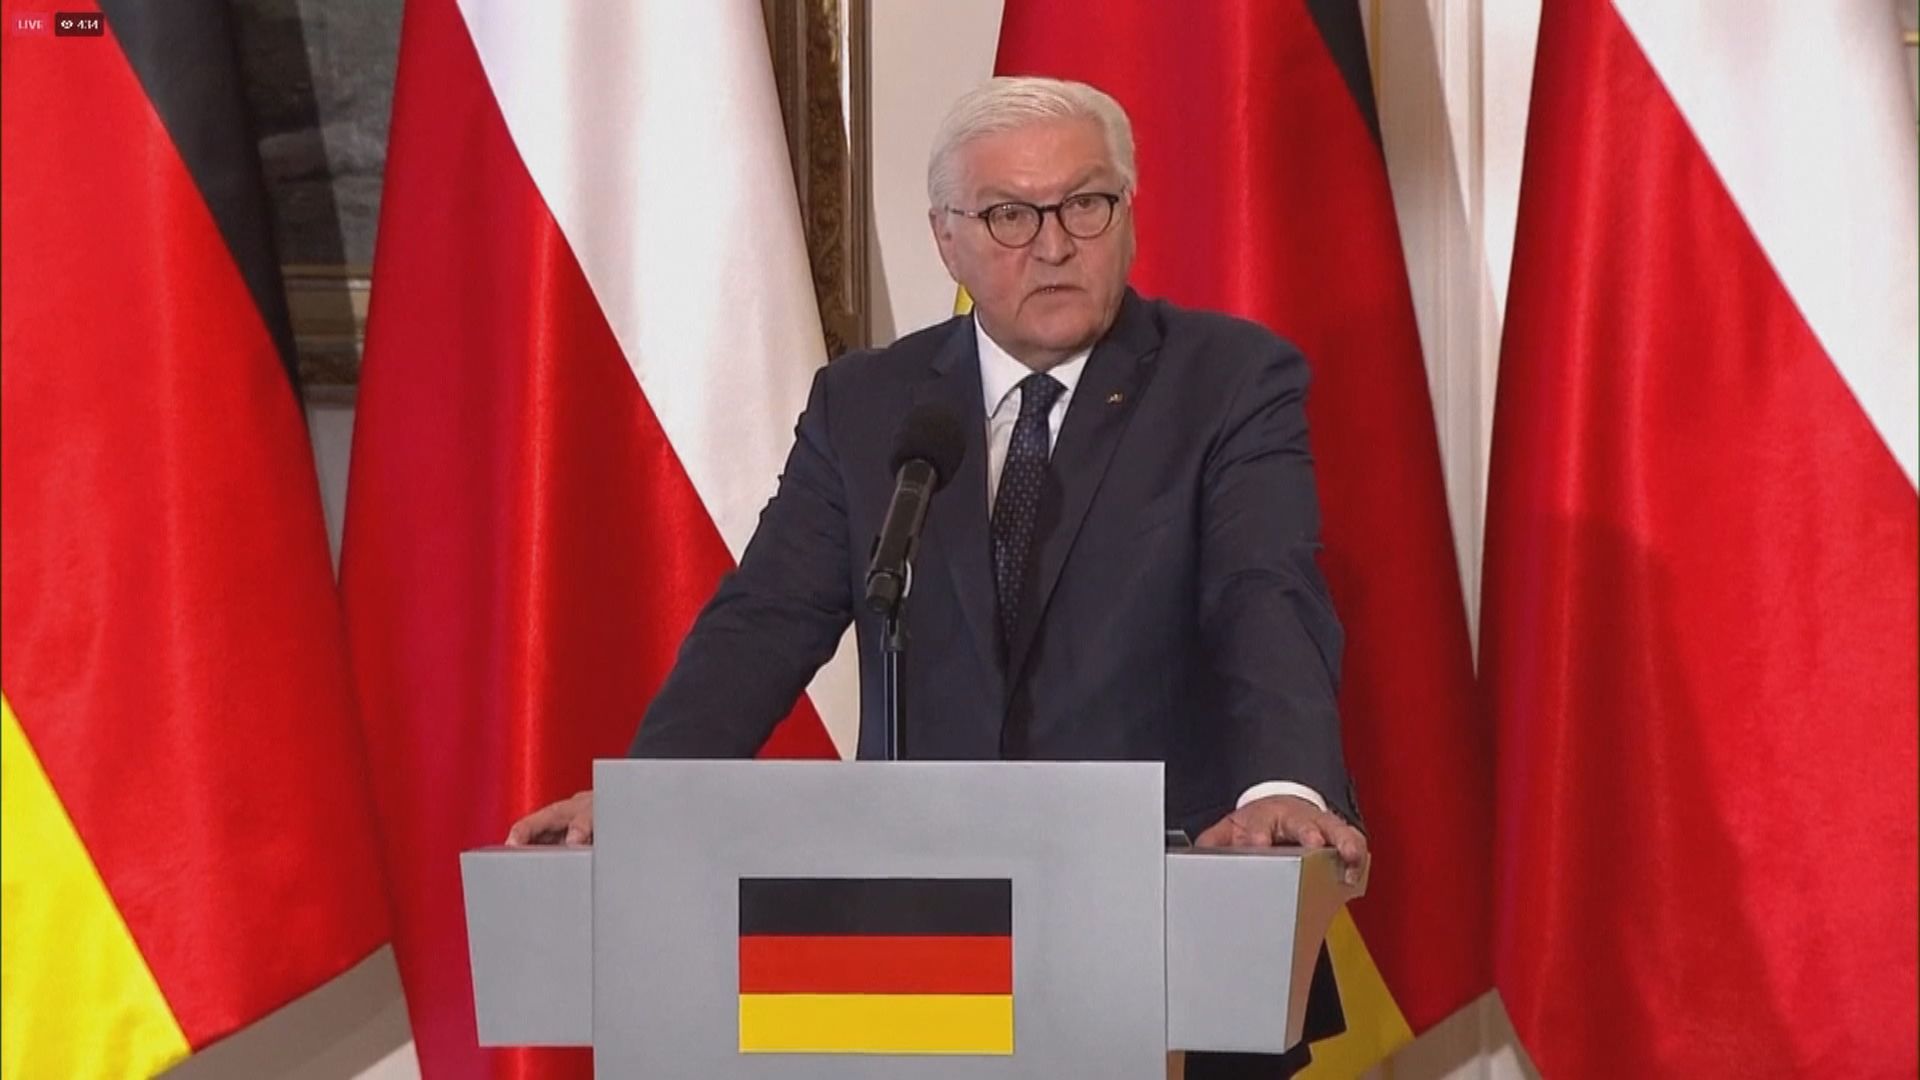 烏克蘭不歡迎德國總統到訪基輔